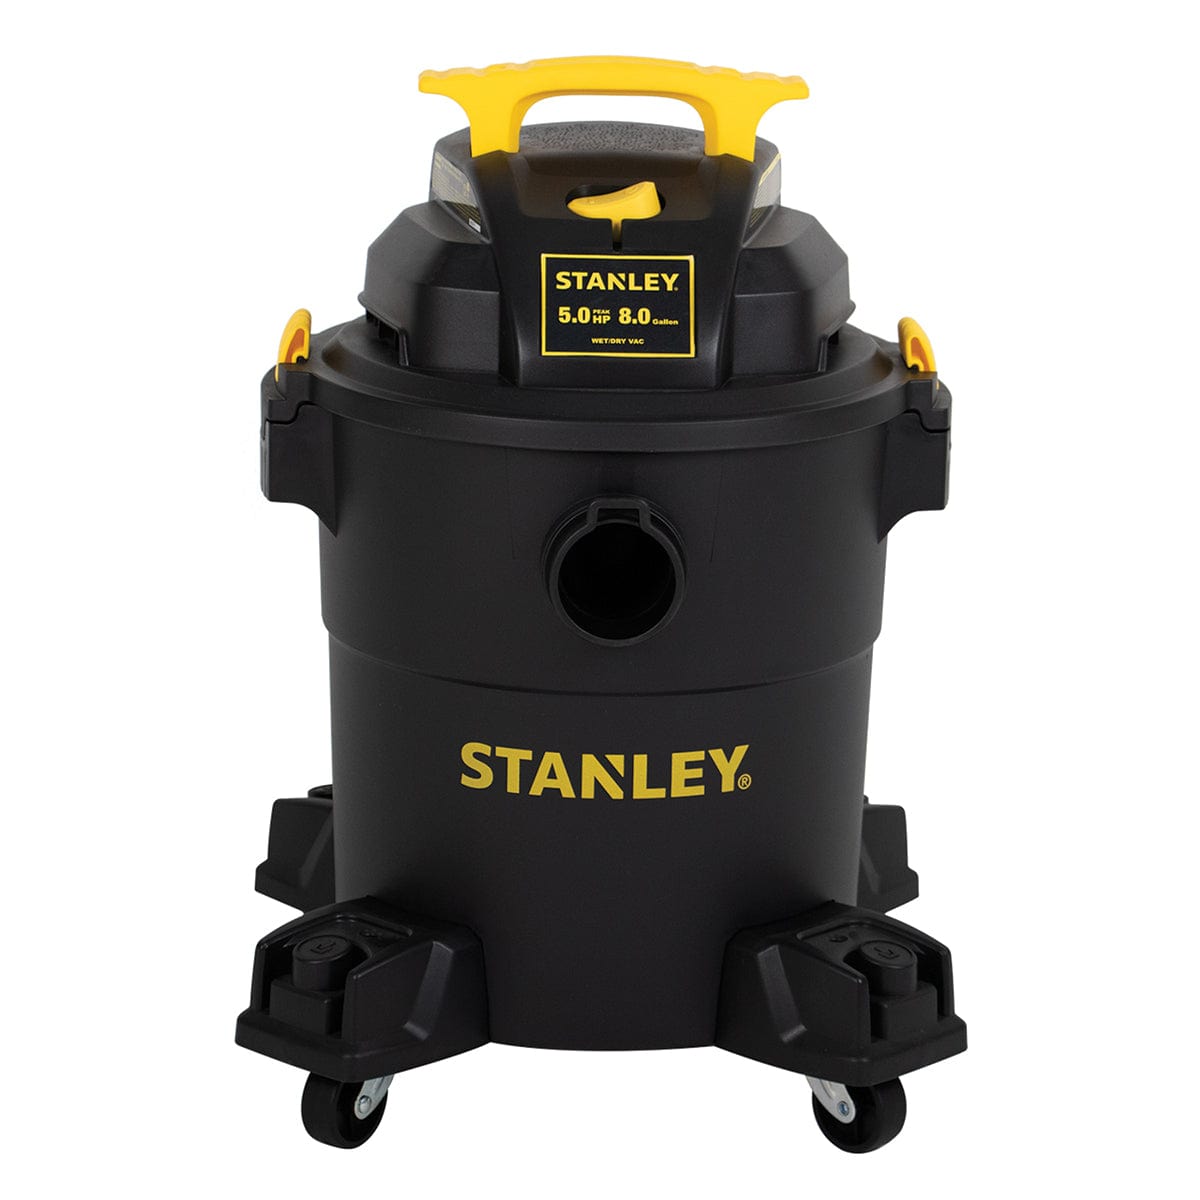 SL18116 - Stanley Stainless Steel Wet/Dry Vacuum- 6 Gallon, 4.5 Peak HP